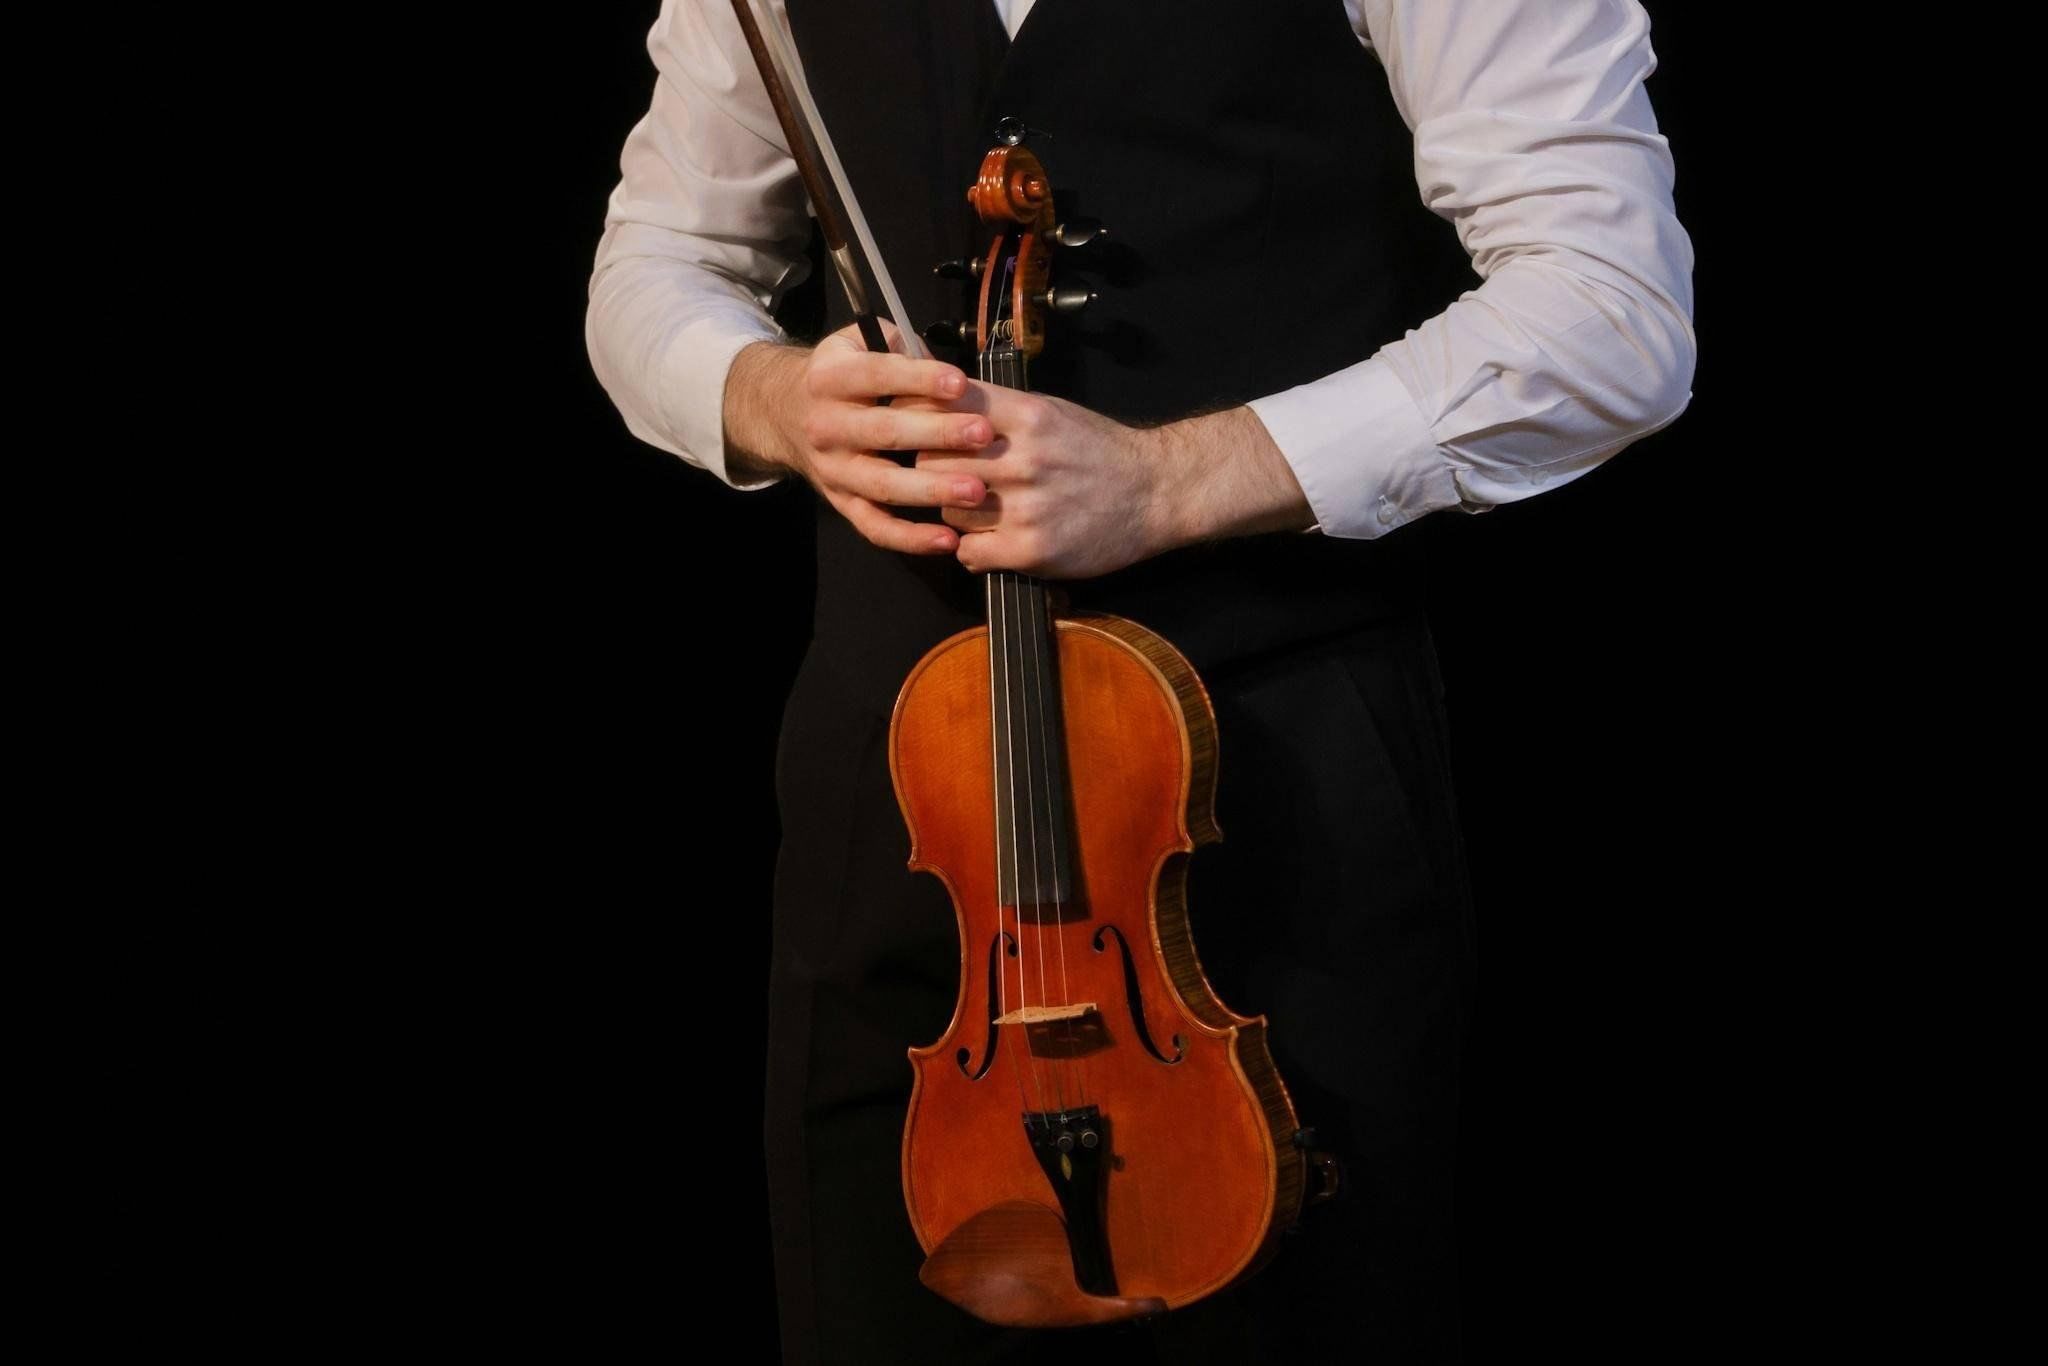 2016 Конкурс скрипачей в Омске фото. Викторов скрипки